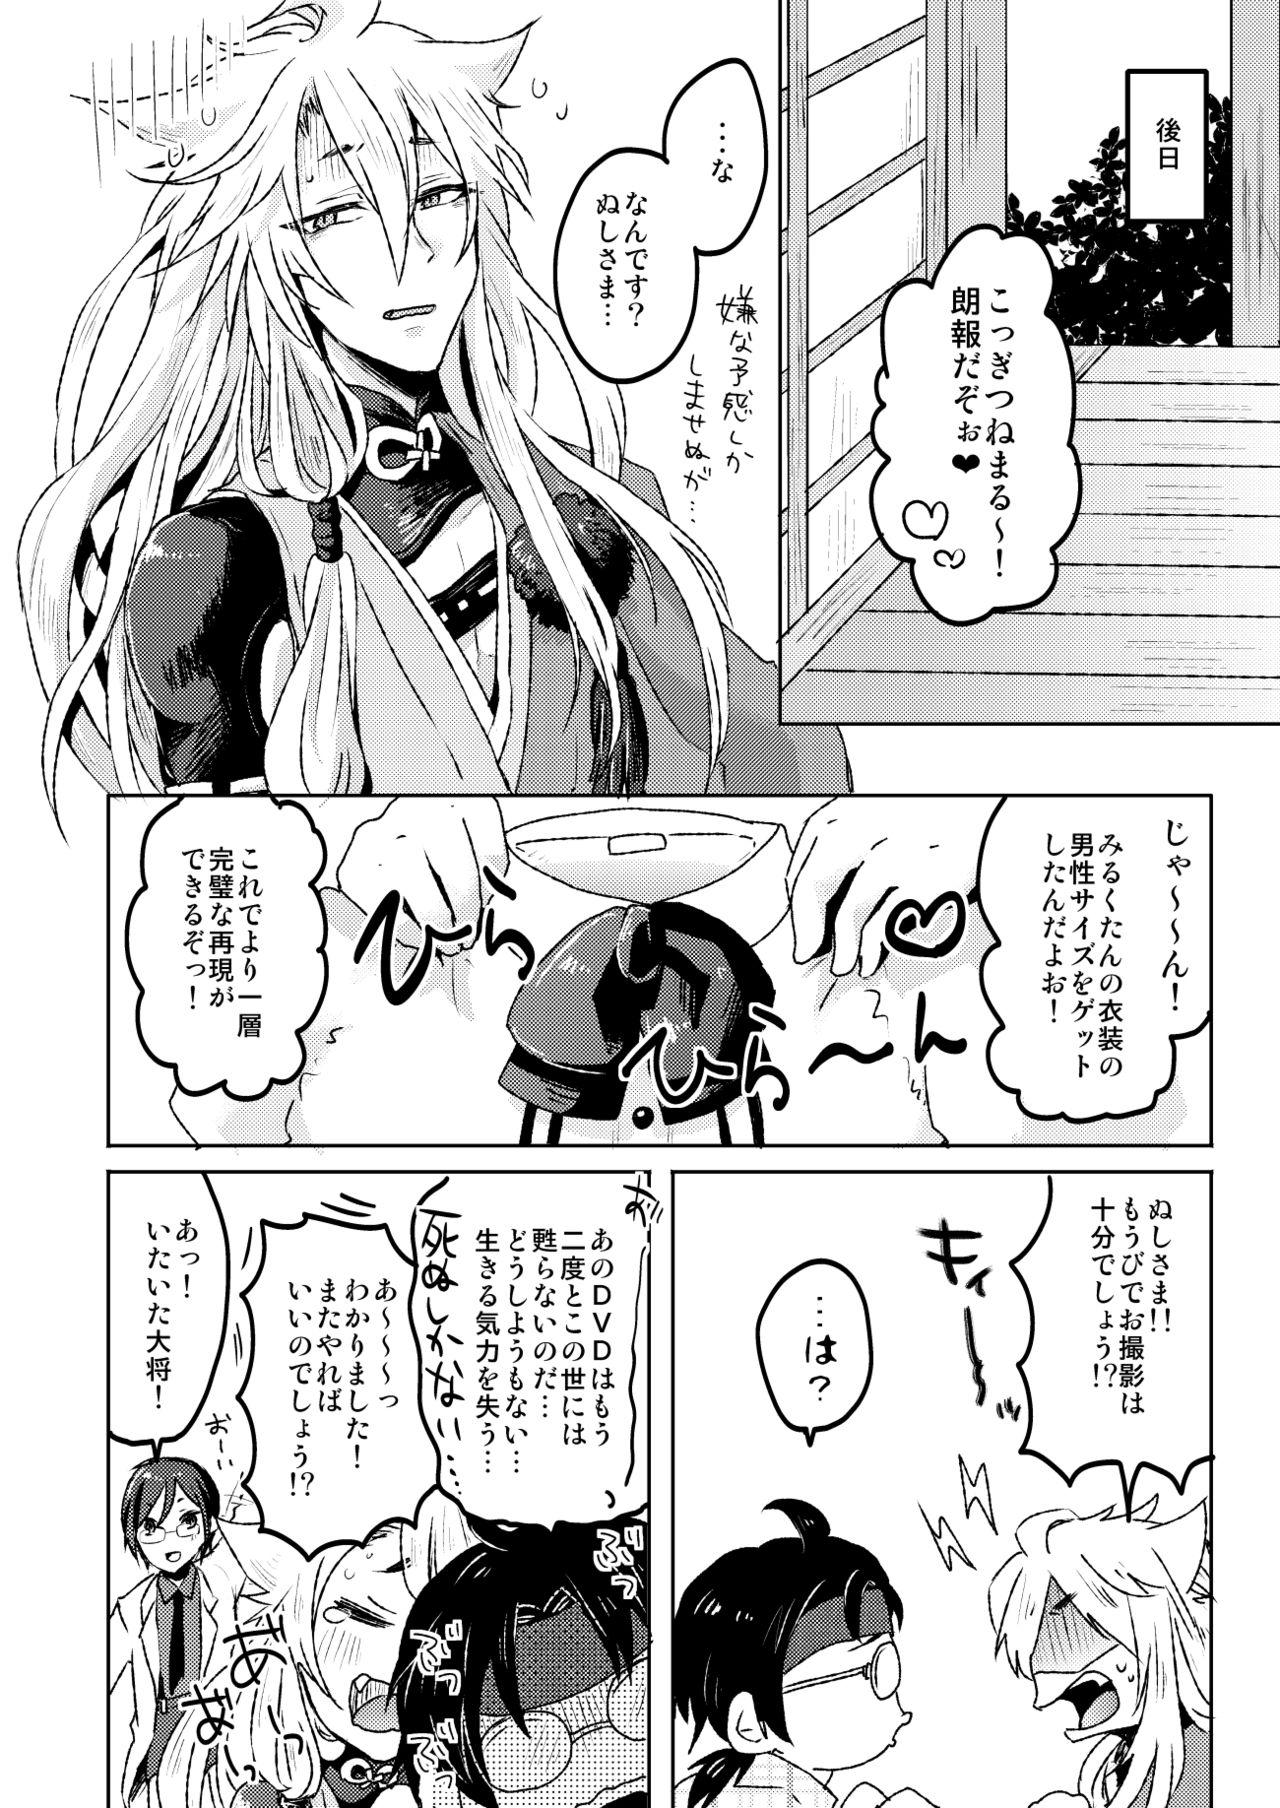 Milfsex 愛狐遊戯 - Touken ranbu Internal - Page 24